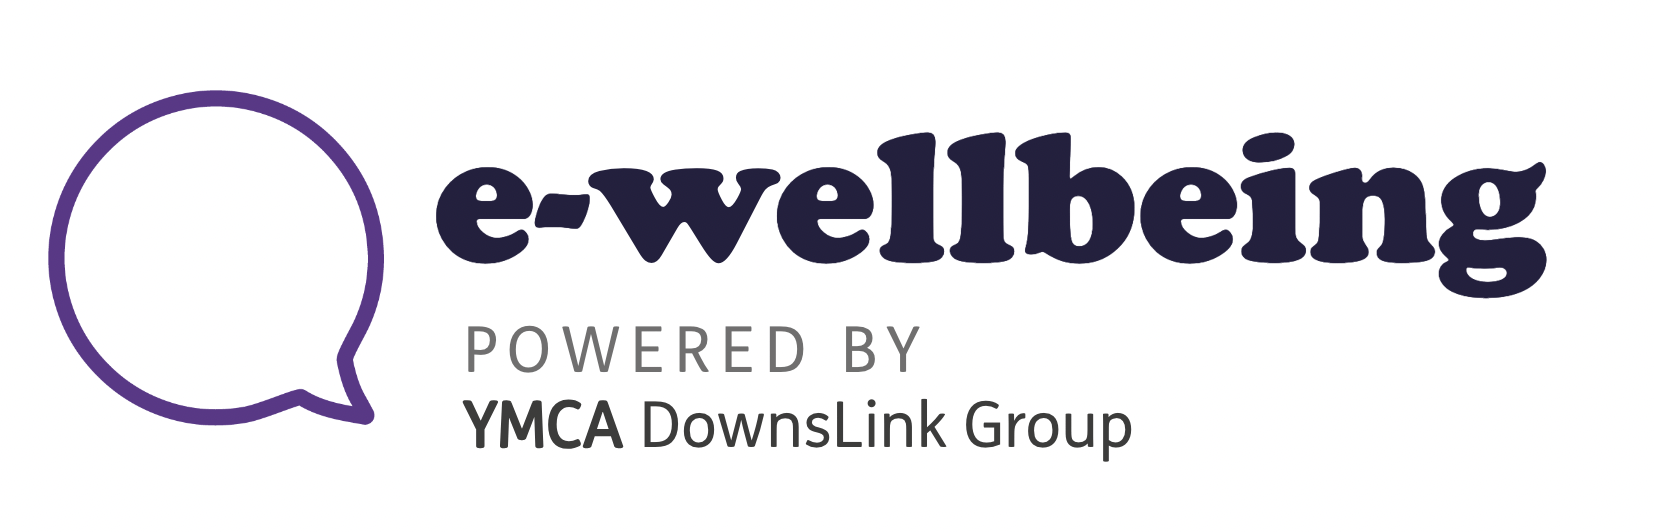 ewellbeing logo